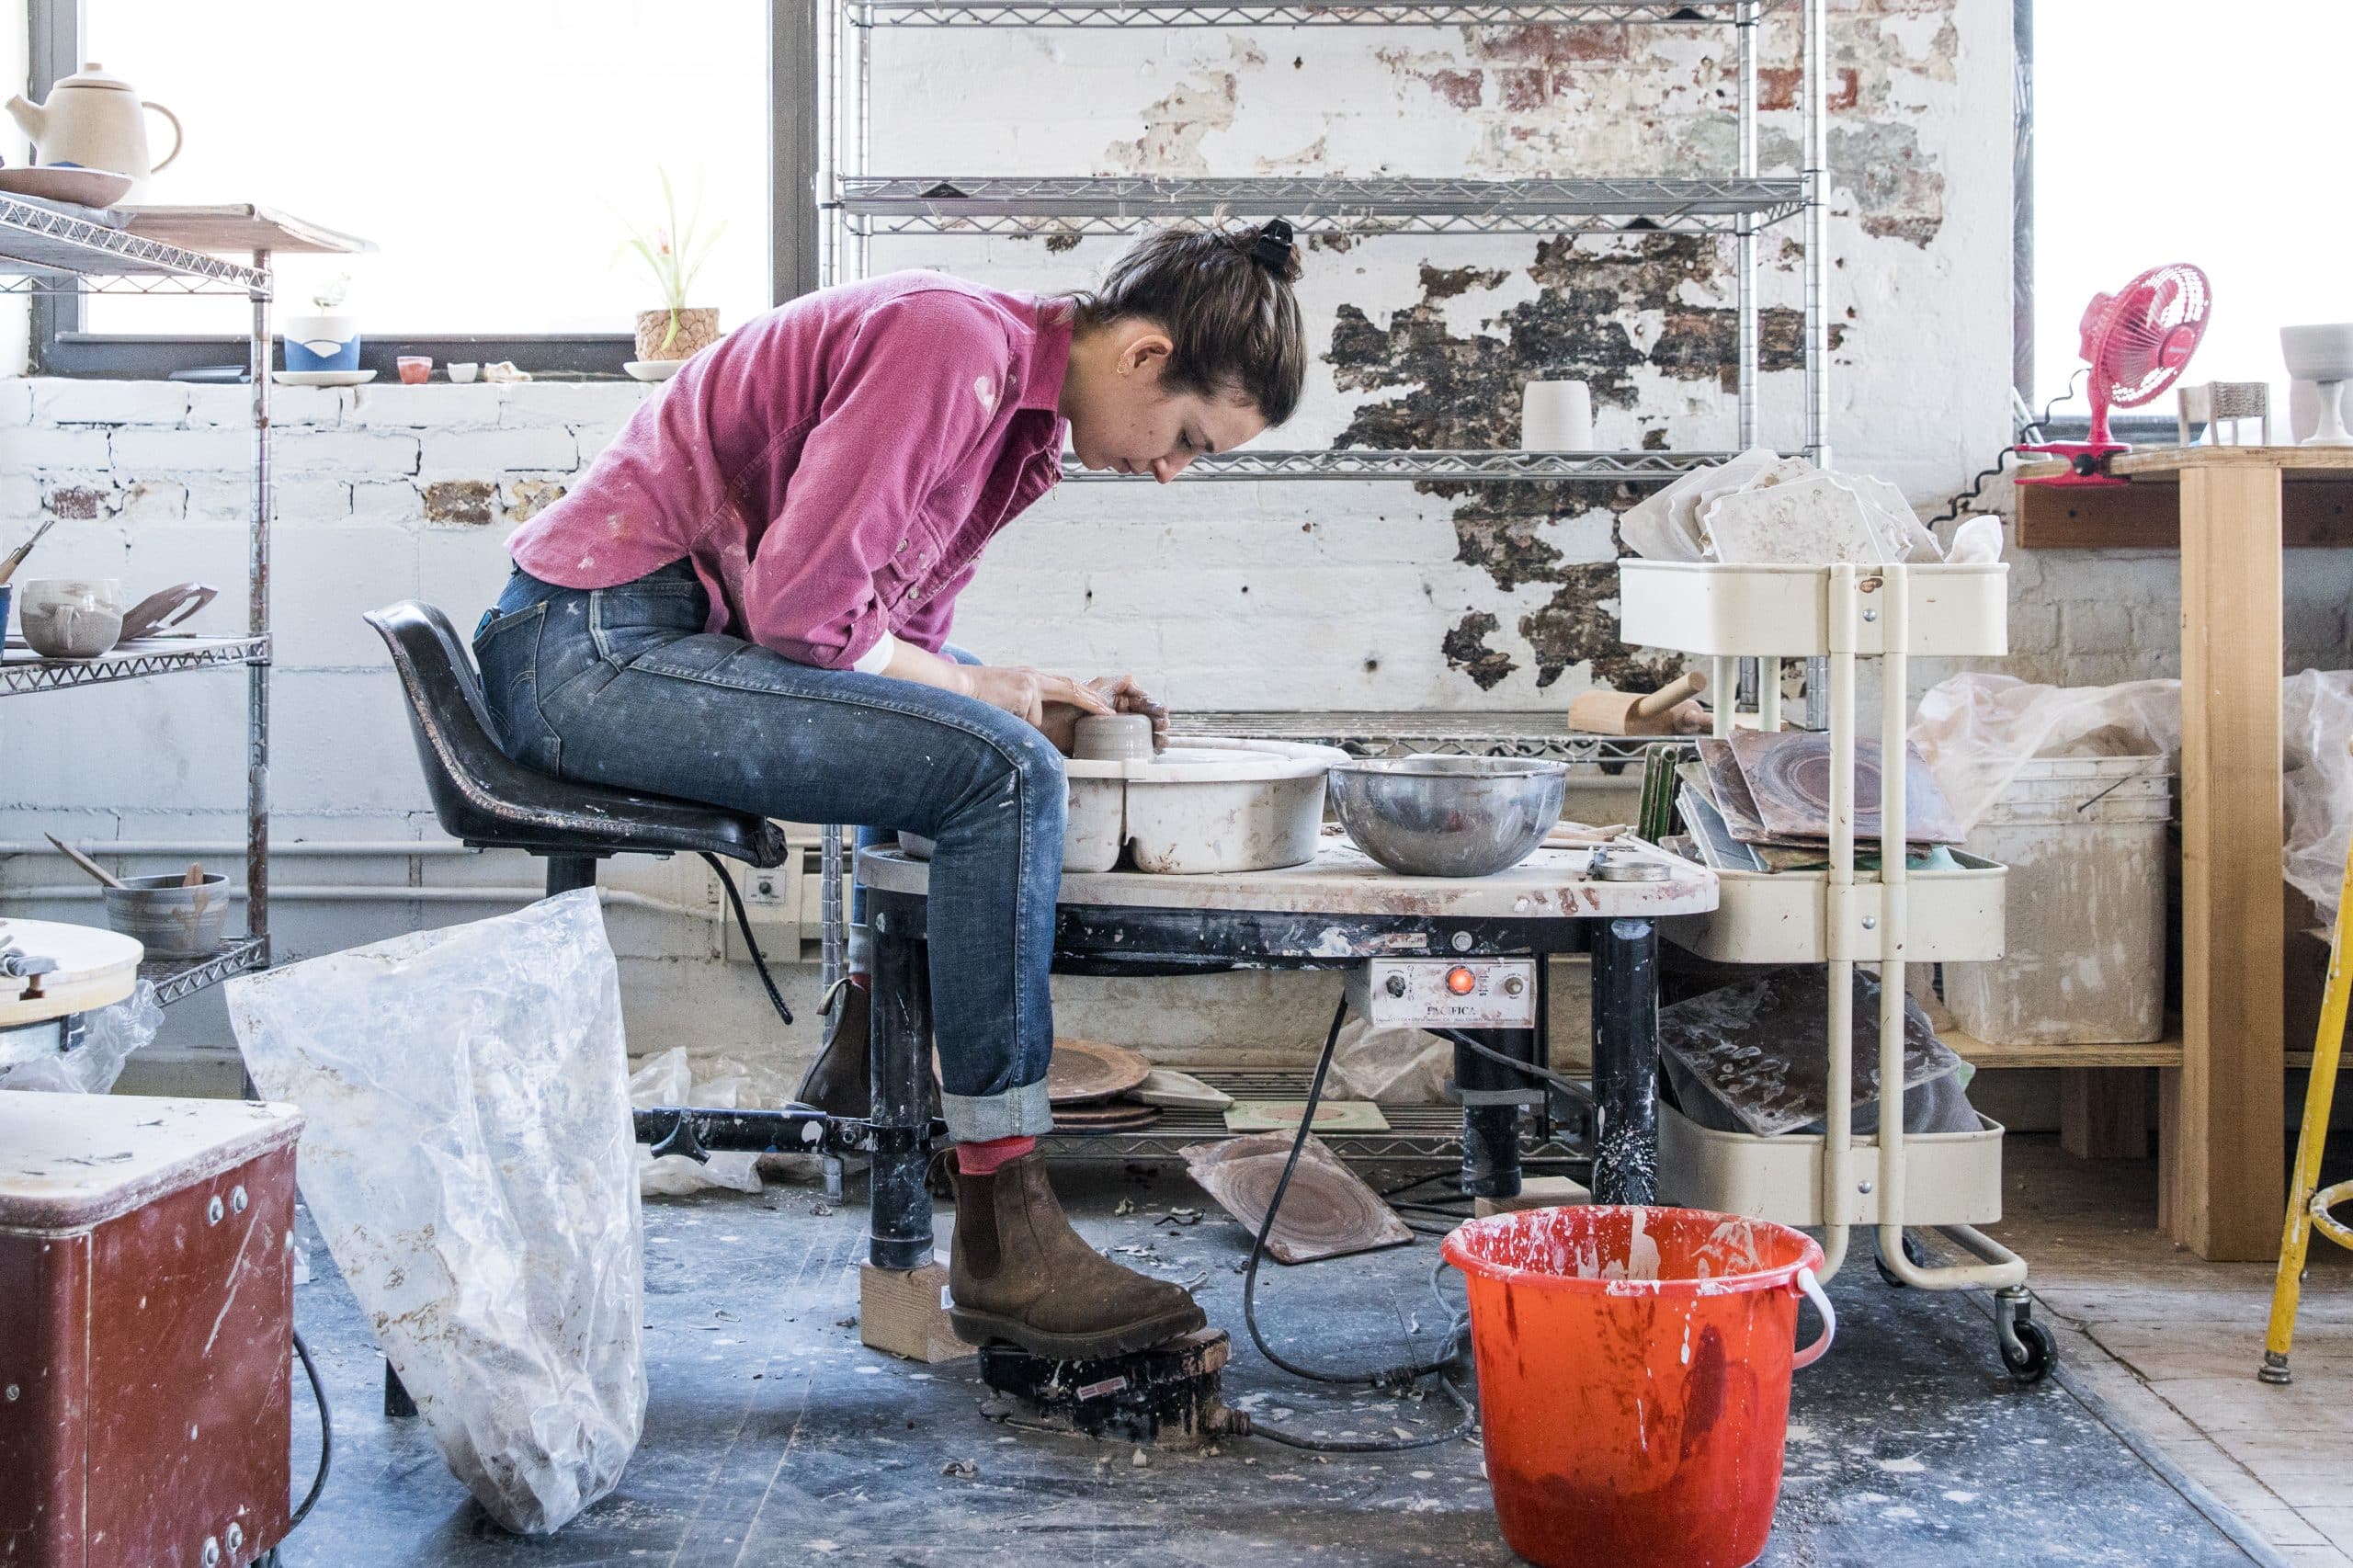 Helen Levi: Ceramic Art Hobbyist to Full-Time Creative Career